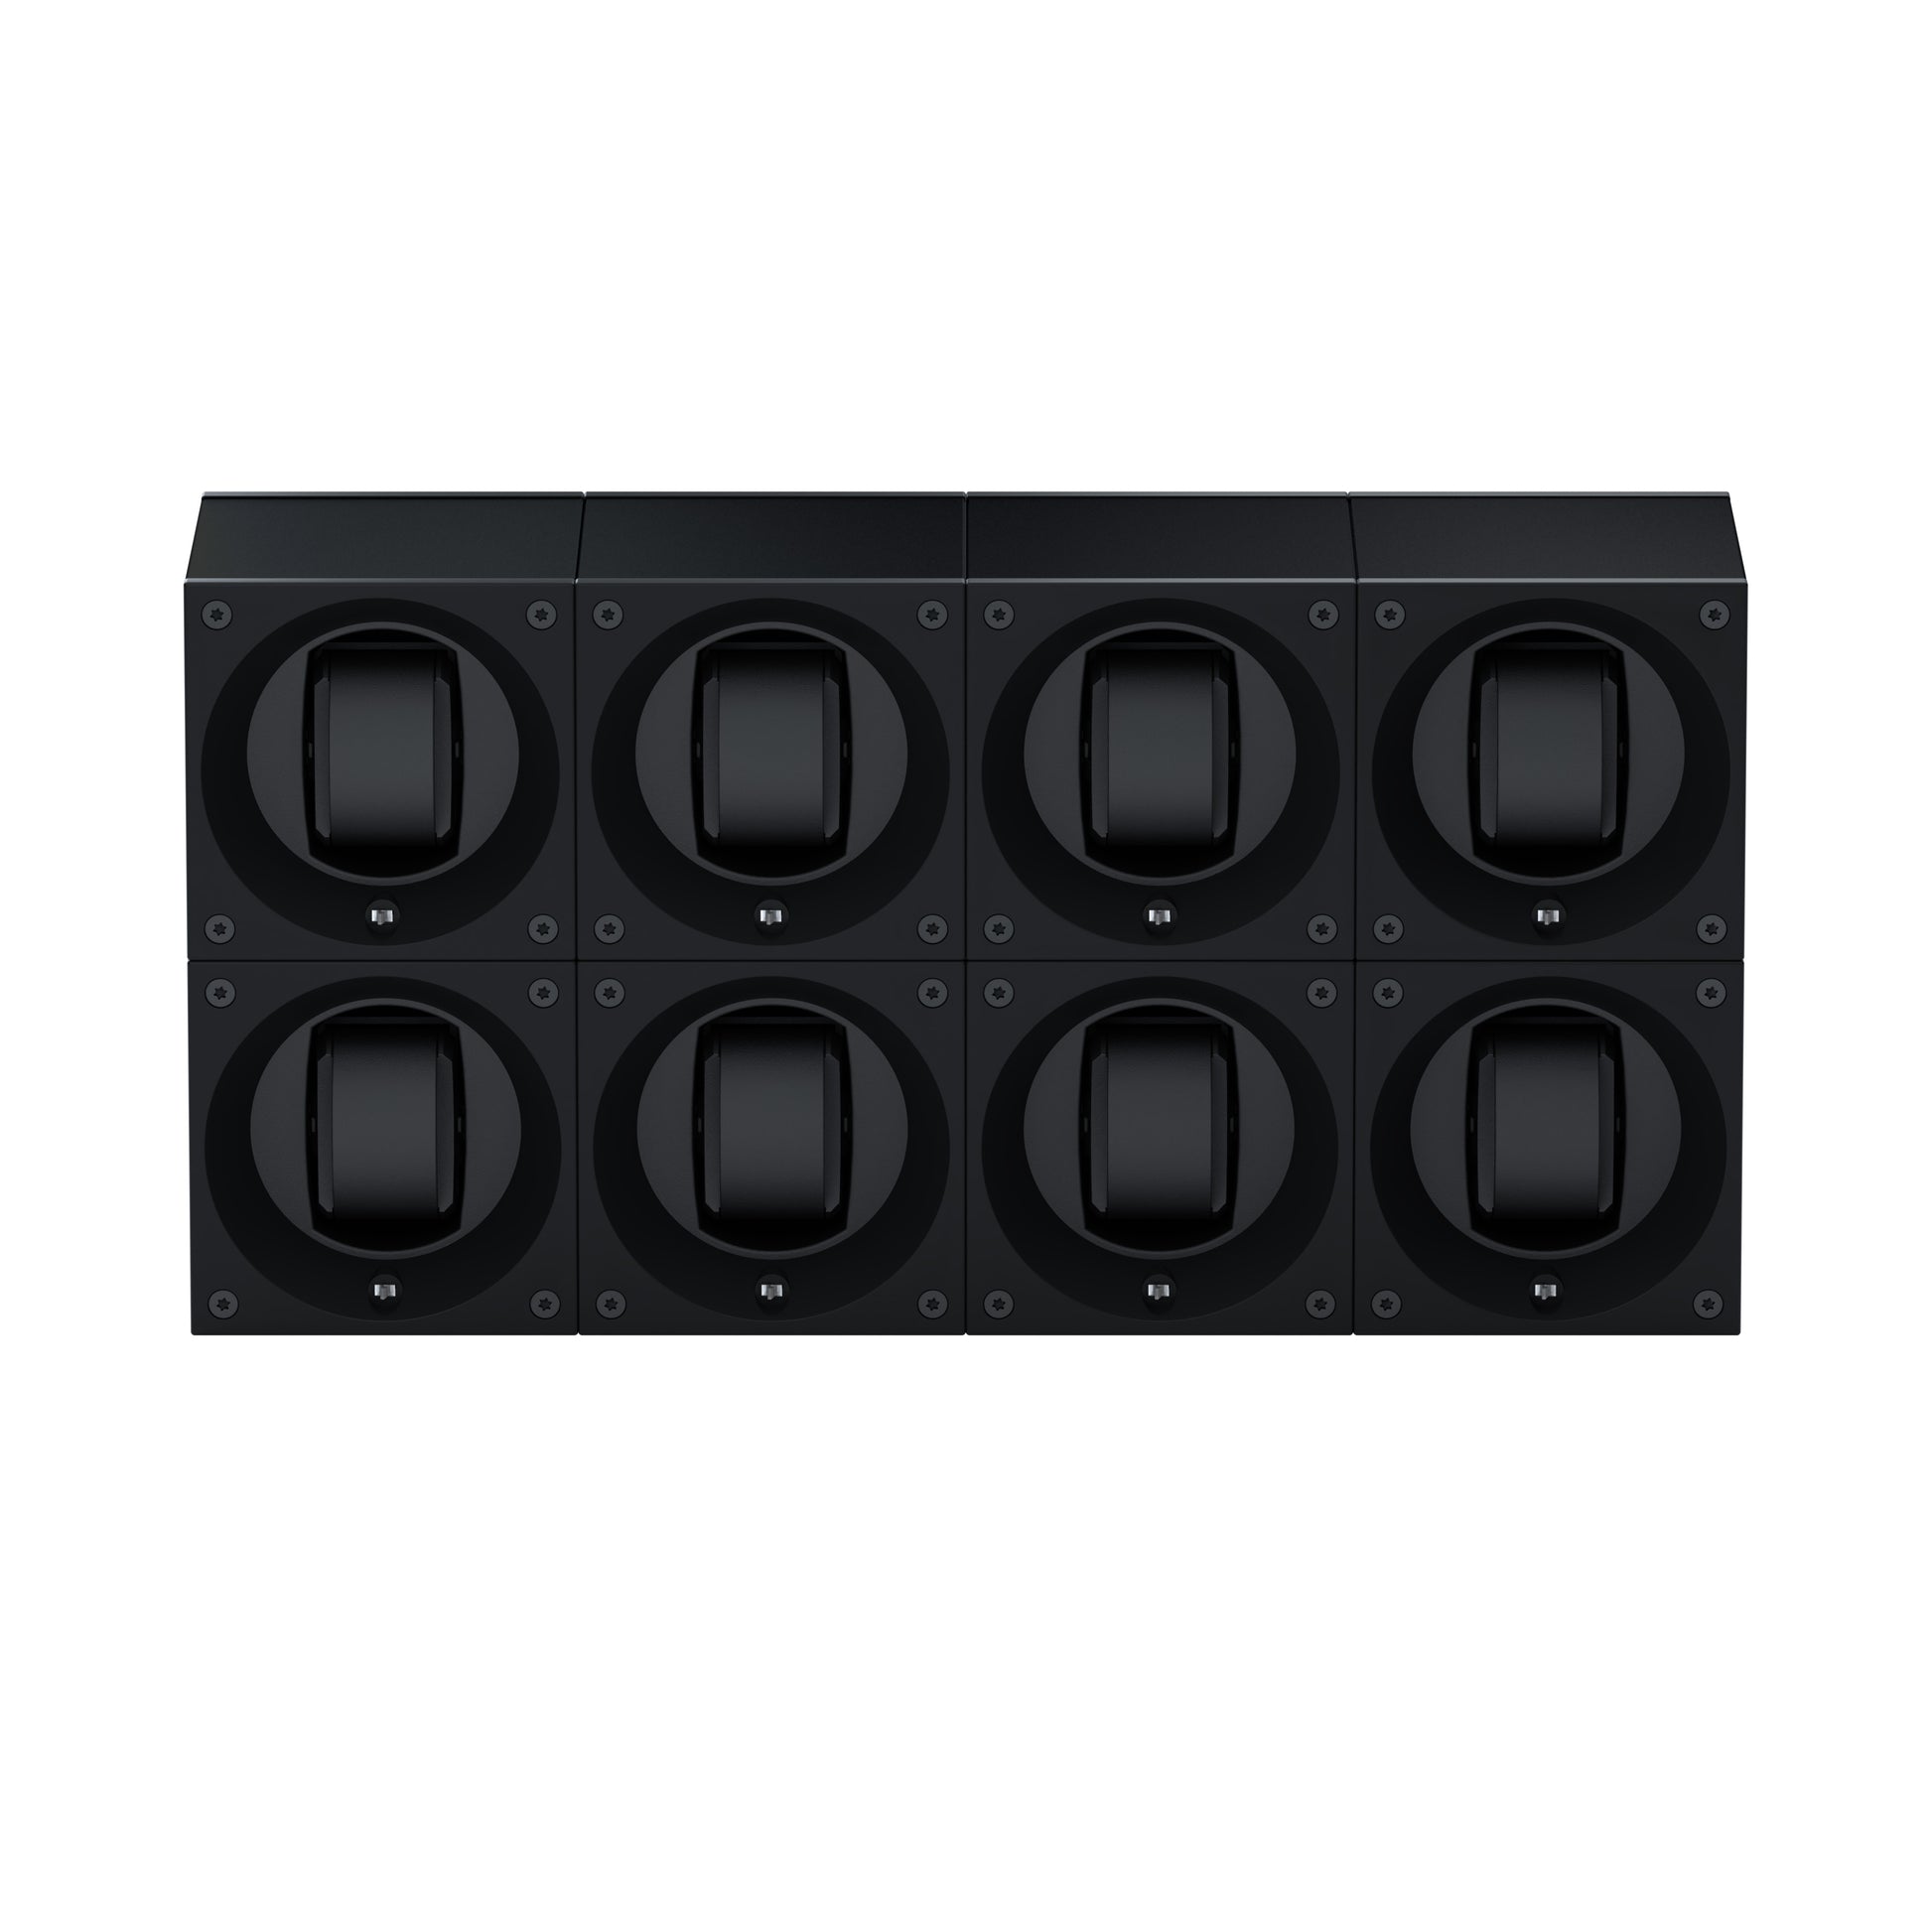 Masterbox 8 montres Aluminium Noir : écrin rotatif pour montre automatique